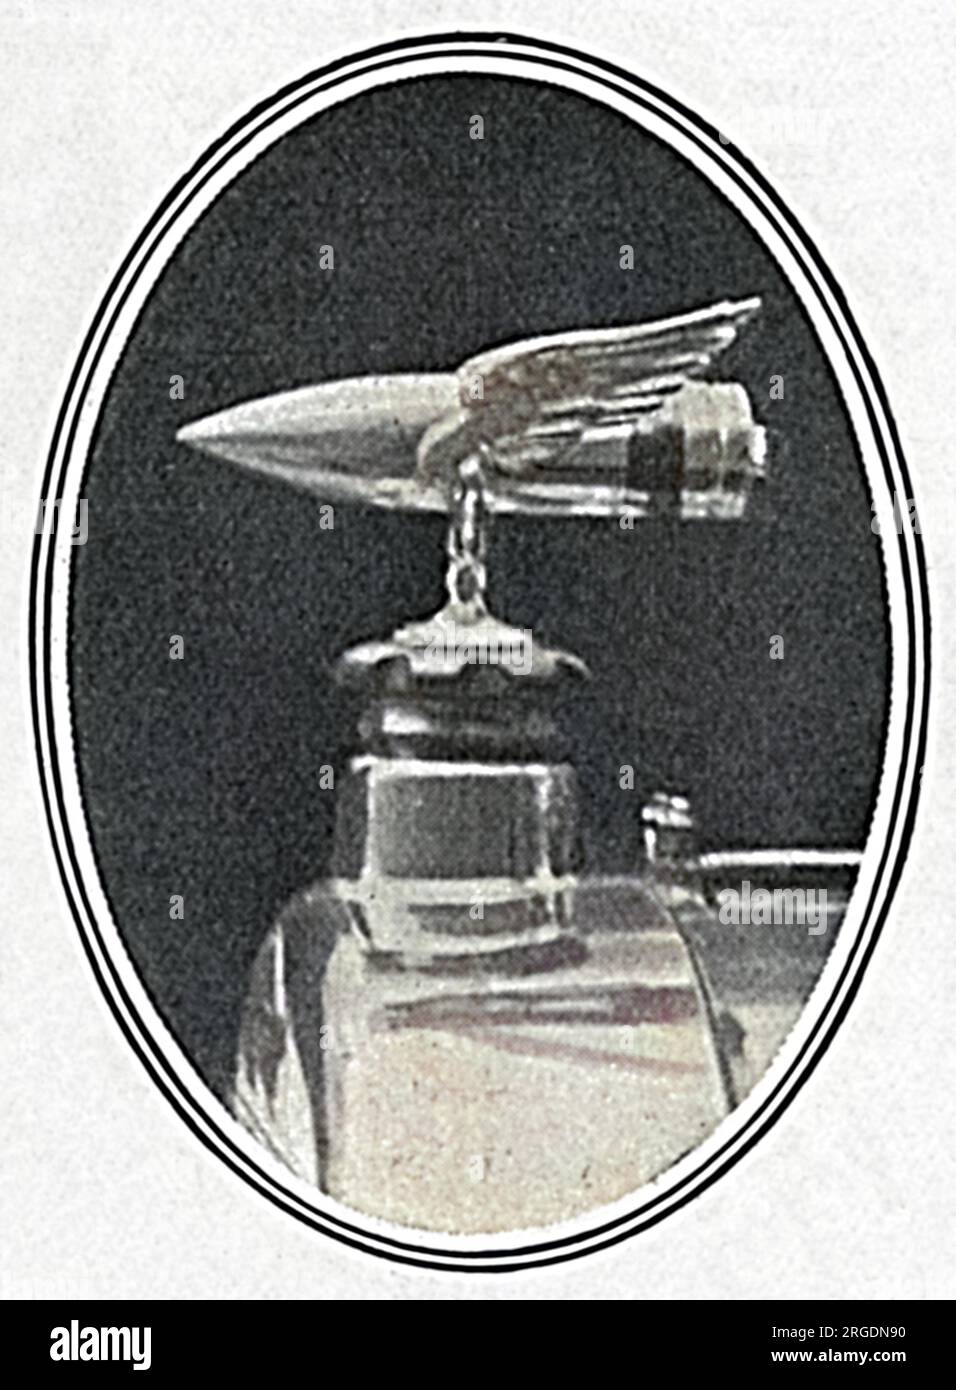 Un simbolico guscio alato montato sull'auto di David Lloyd George, ministro delle munizioni nel 1915. Gli è stato presentato da un produttore come segno di apprezzamento per il suo lavoro nell'accelerare la produzione di munizioni. Foto Stock